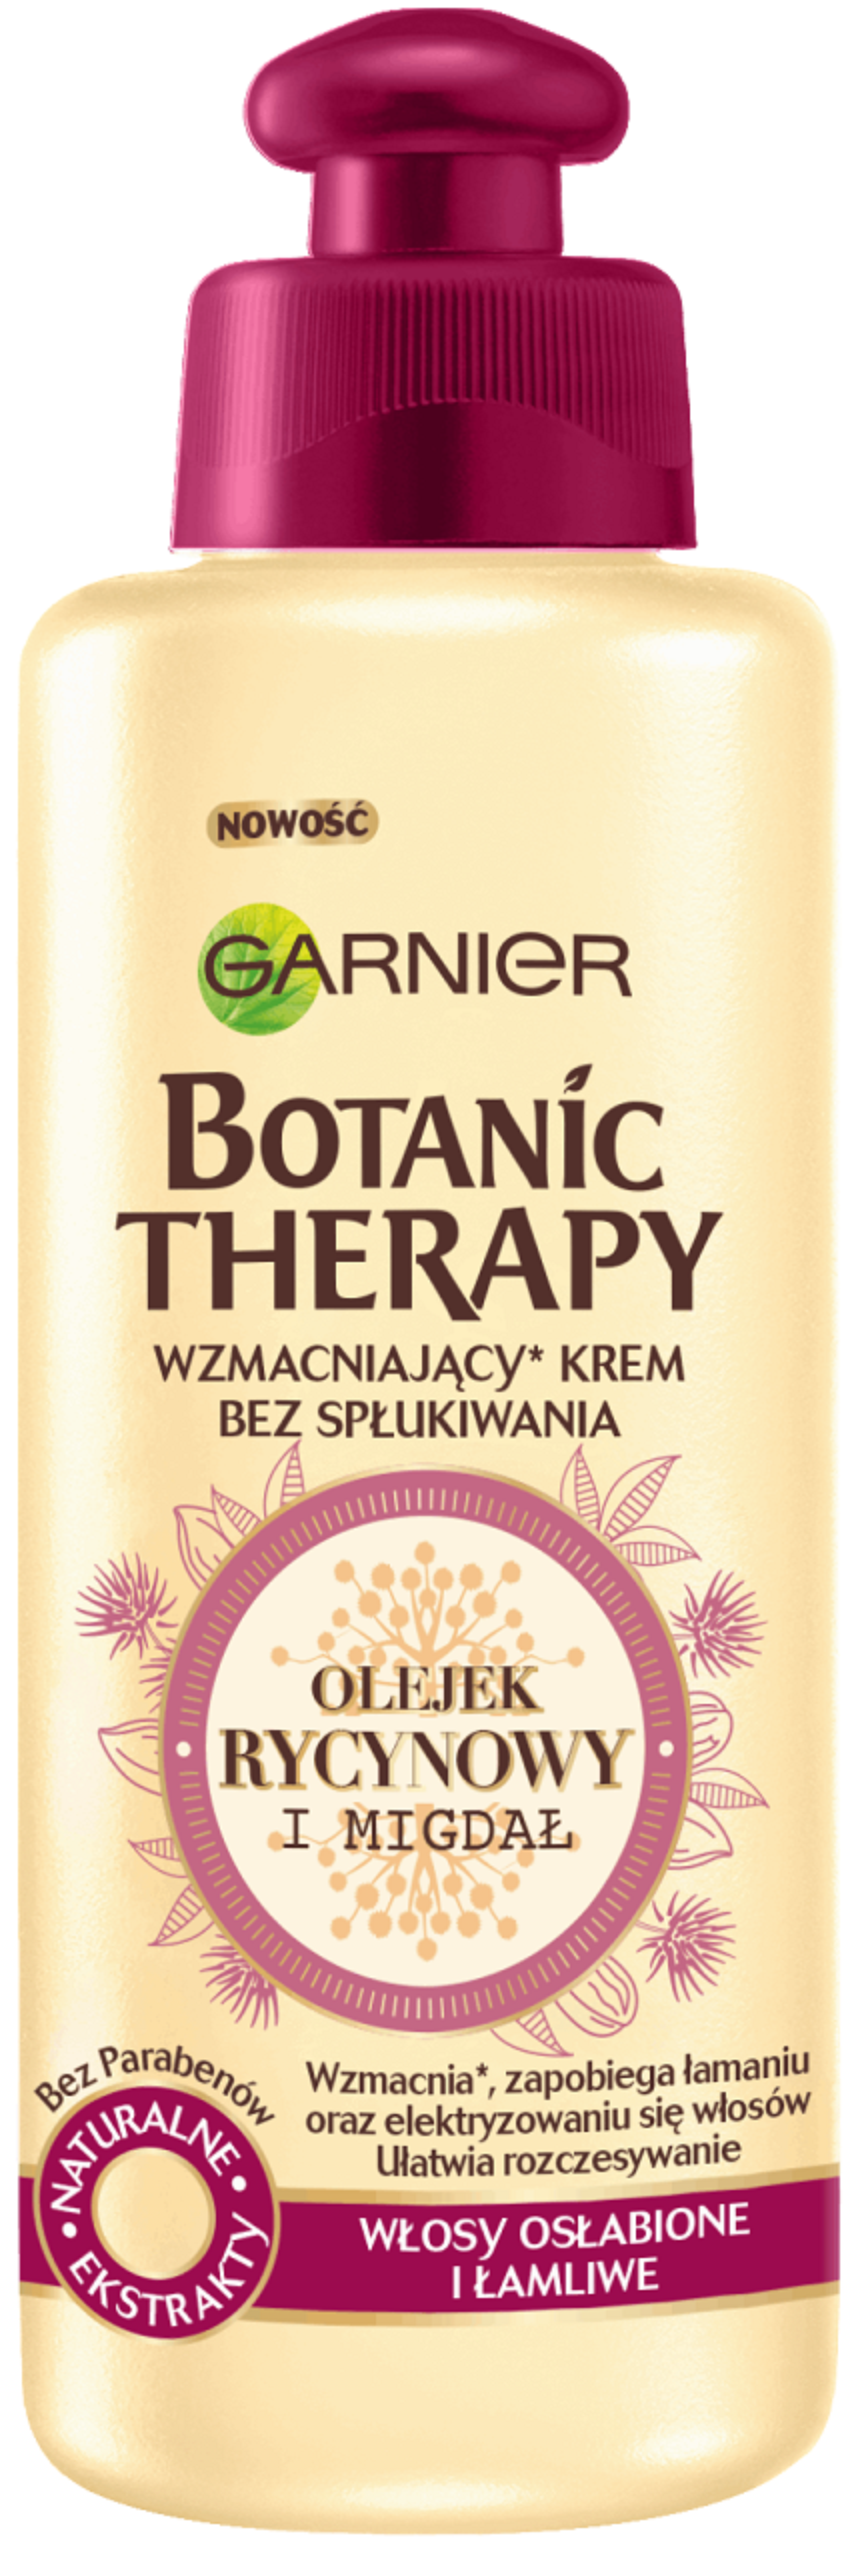 garnier botanic therapy krem do włosów olejek rycynowy 200ml